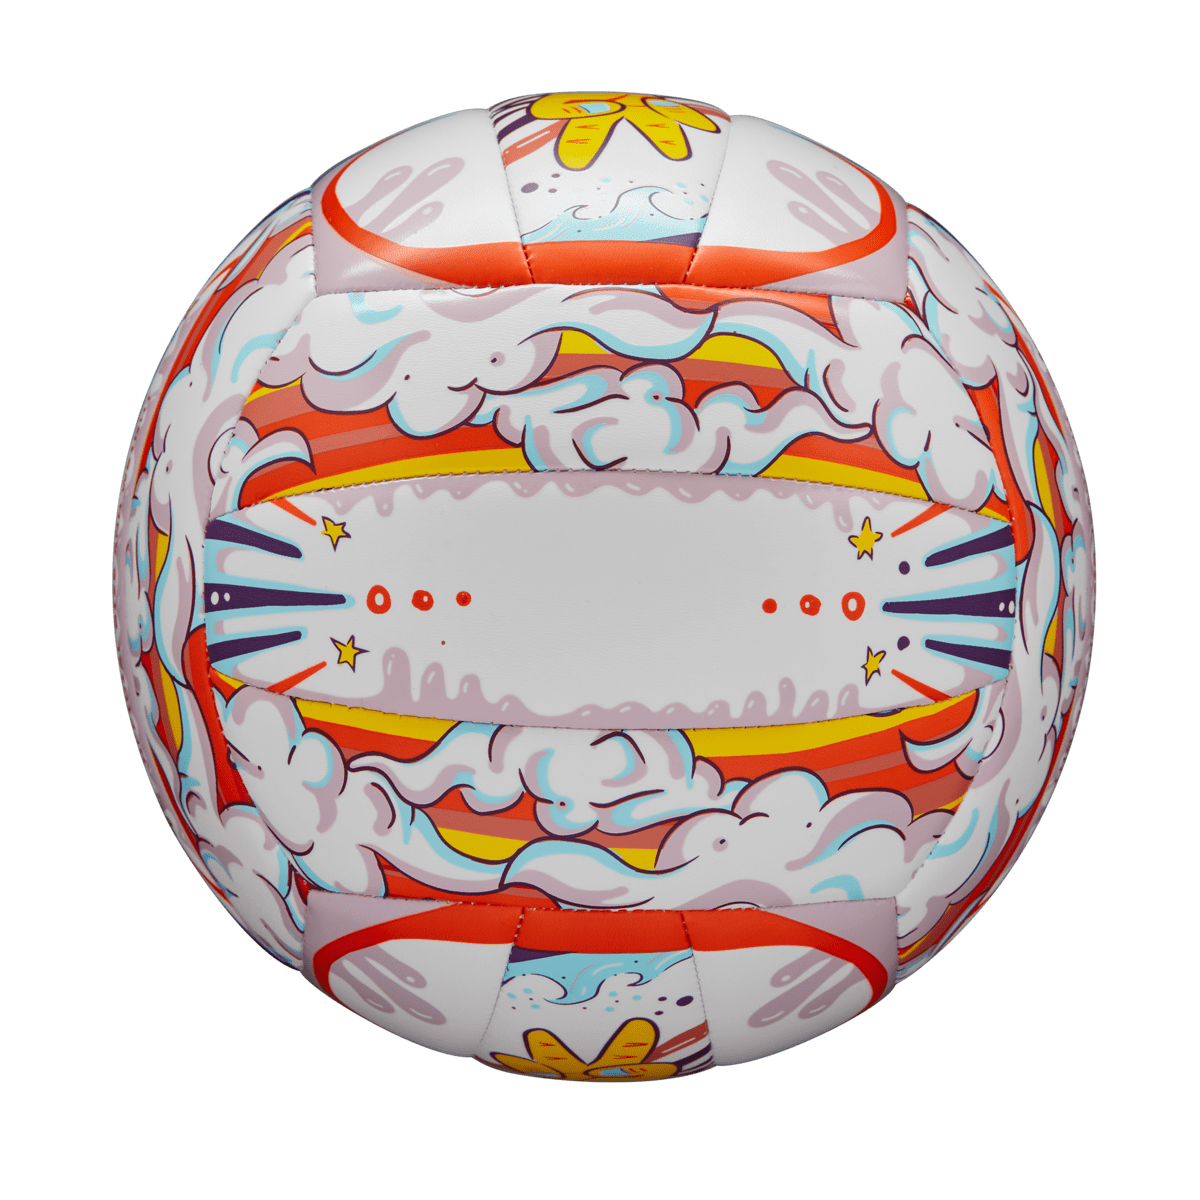 Pelota De Futbol N5 Balon Cuero Sintetico Infantil Niños New